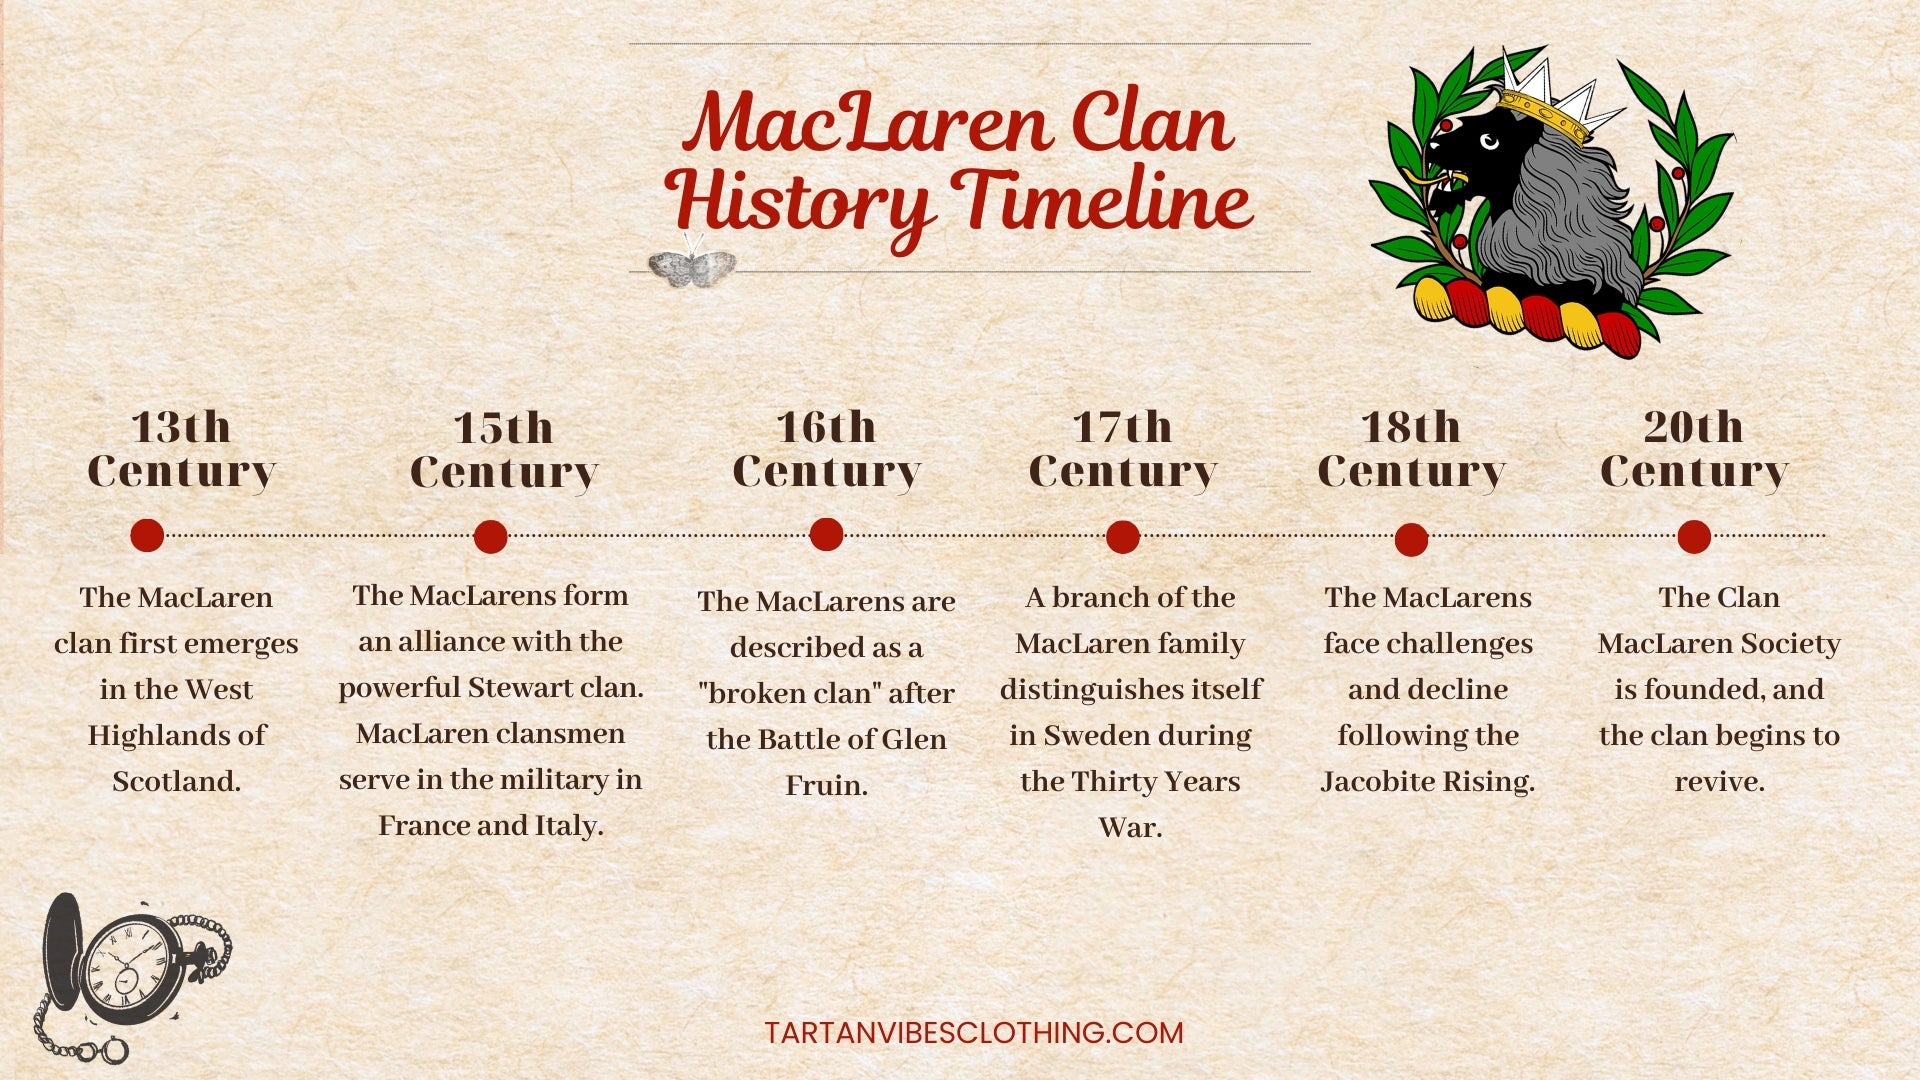 MacLaren Clan History Timeline